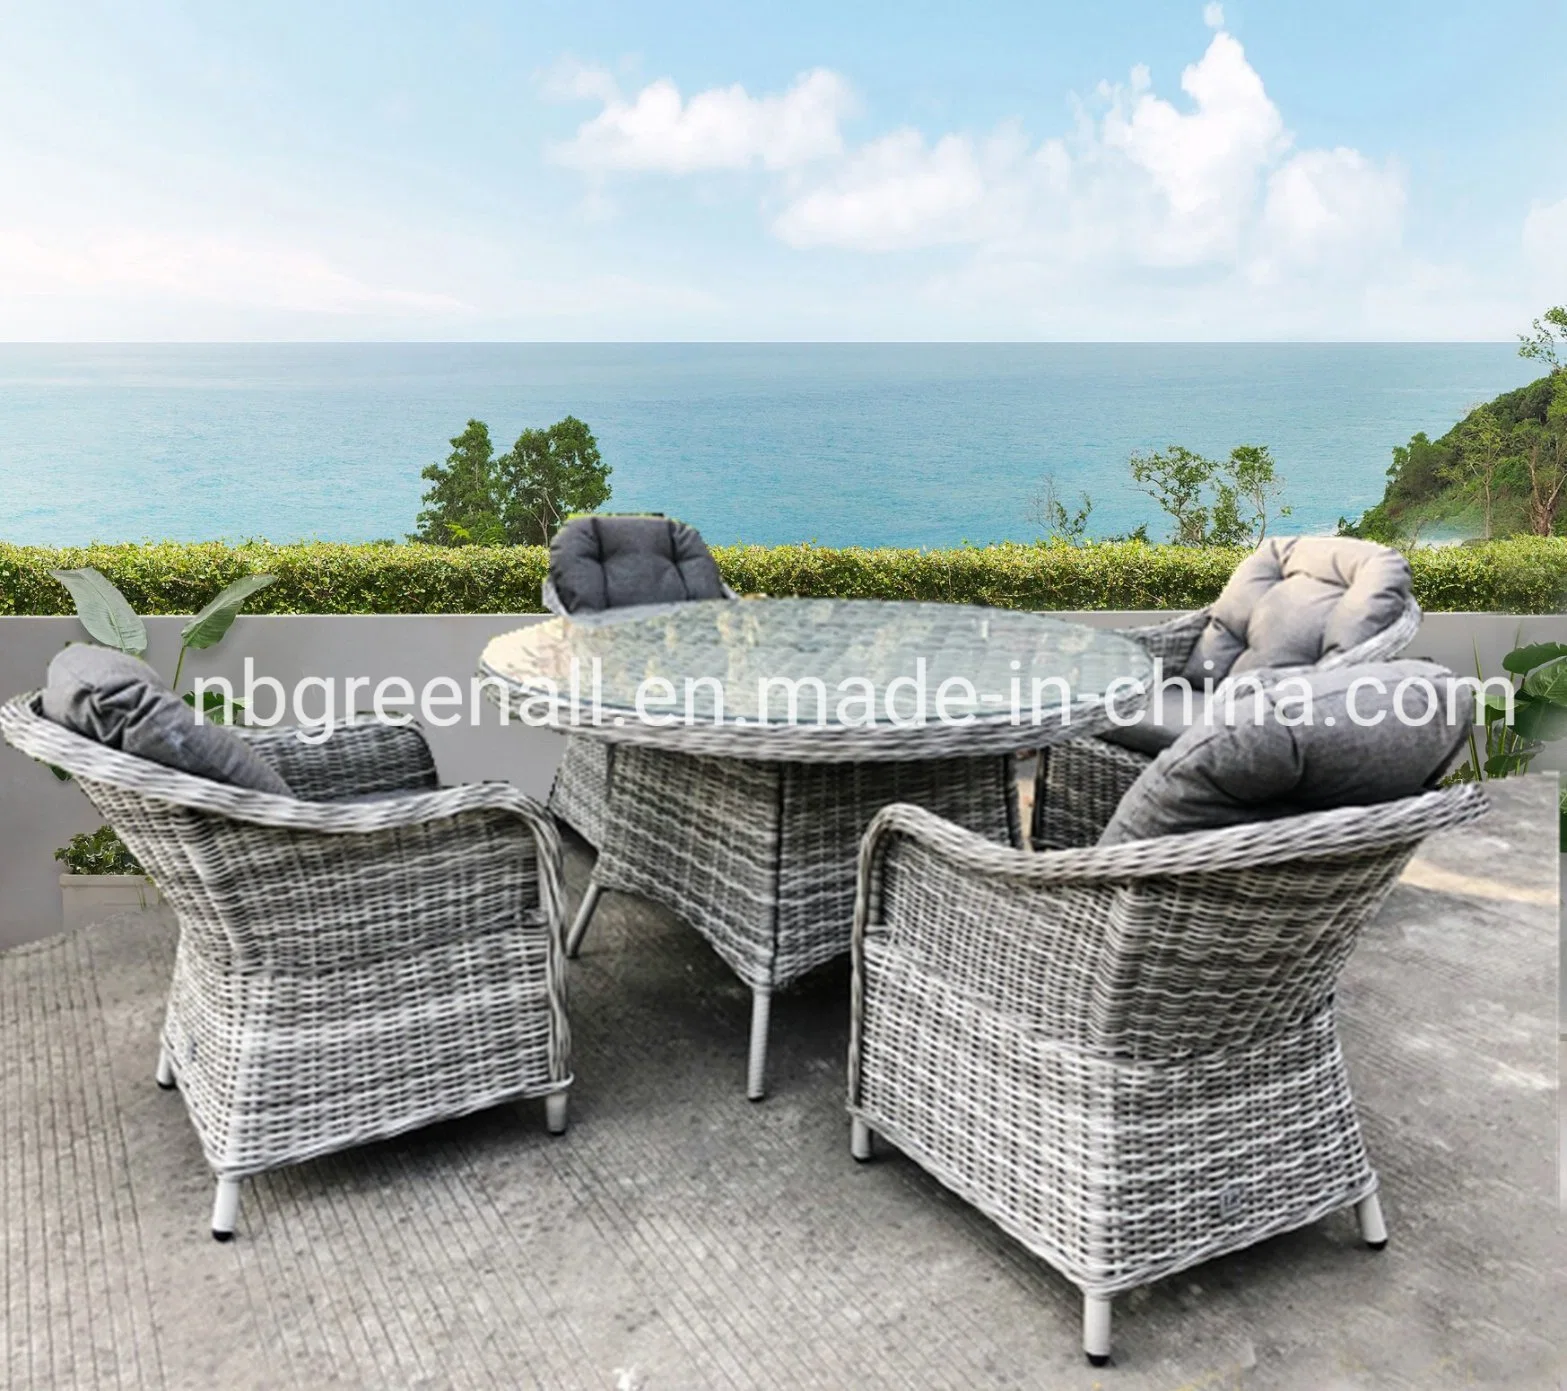 Современный открытый круглый Ratttan удобный ресторан обеденный стол и стулья алюминиевая рама патио с садом Мебель для гостиниц